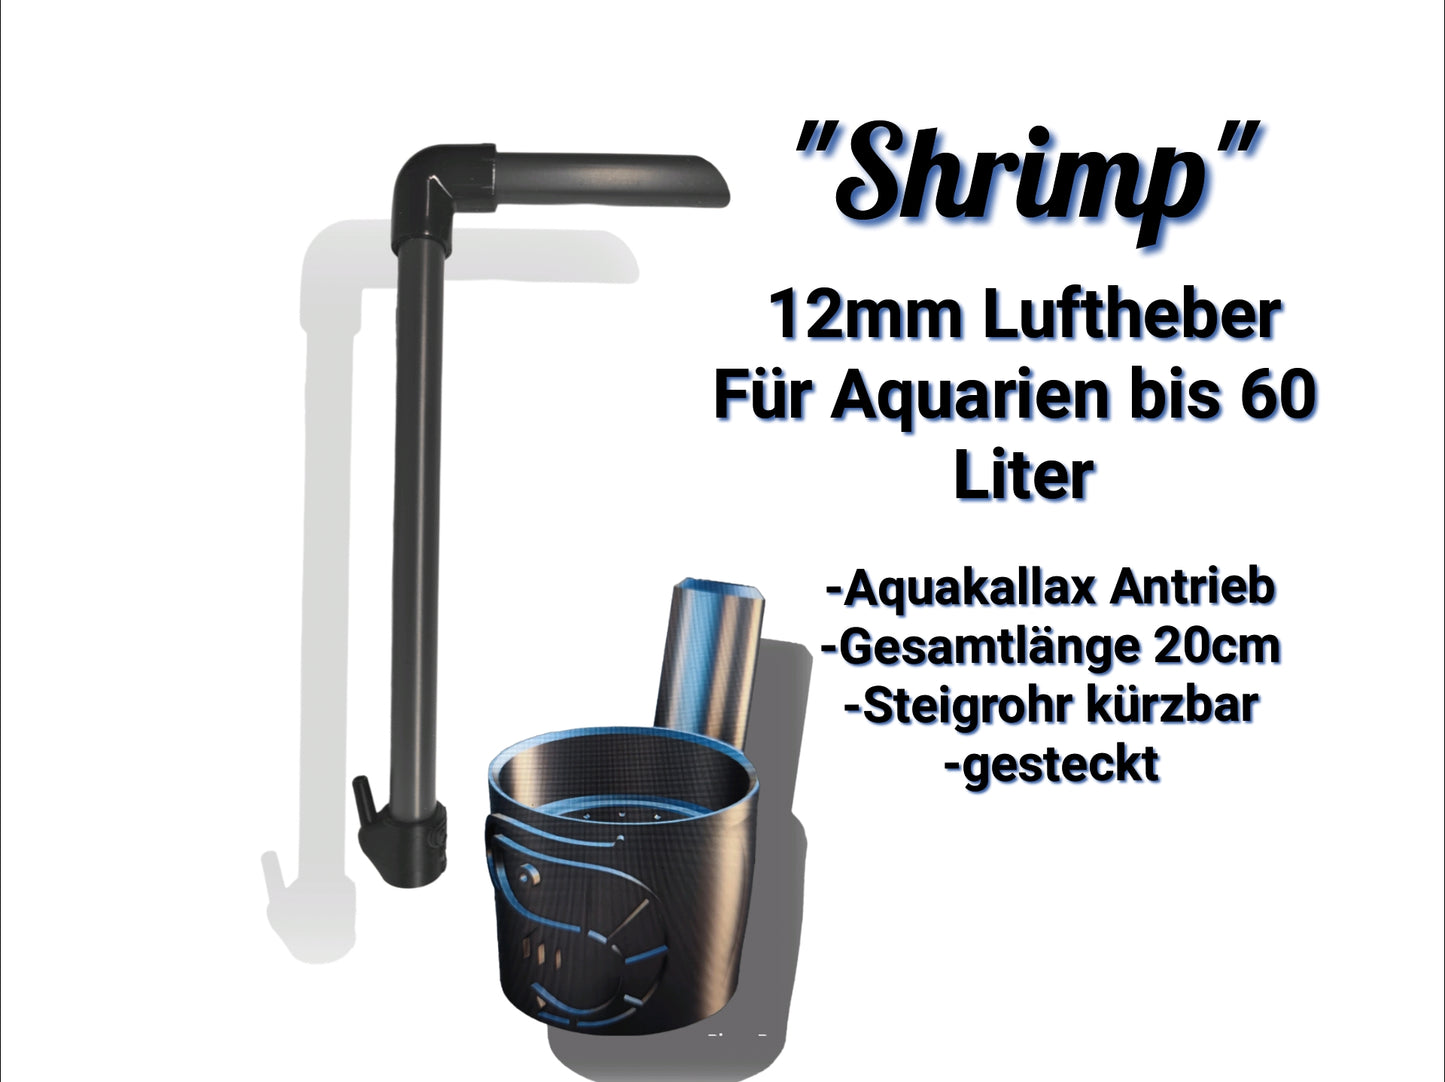 Der Aquakallax Luftheber mit 12mm "Shrimp" Antriebsteil. Für Aquarien bis 60 Liter geeignet. Gesamtlänge 20cm, kürzbares Steigrohr, gesteckte Version